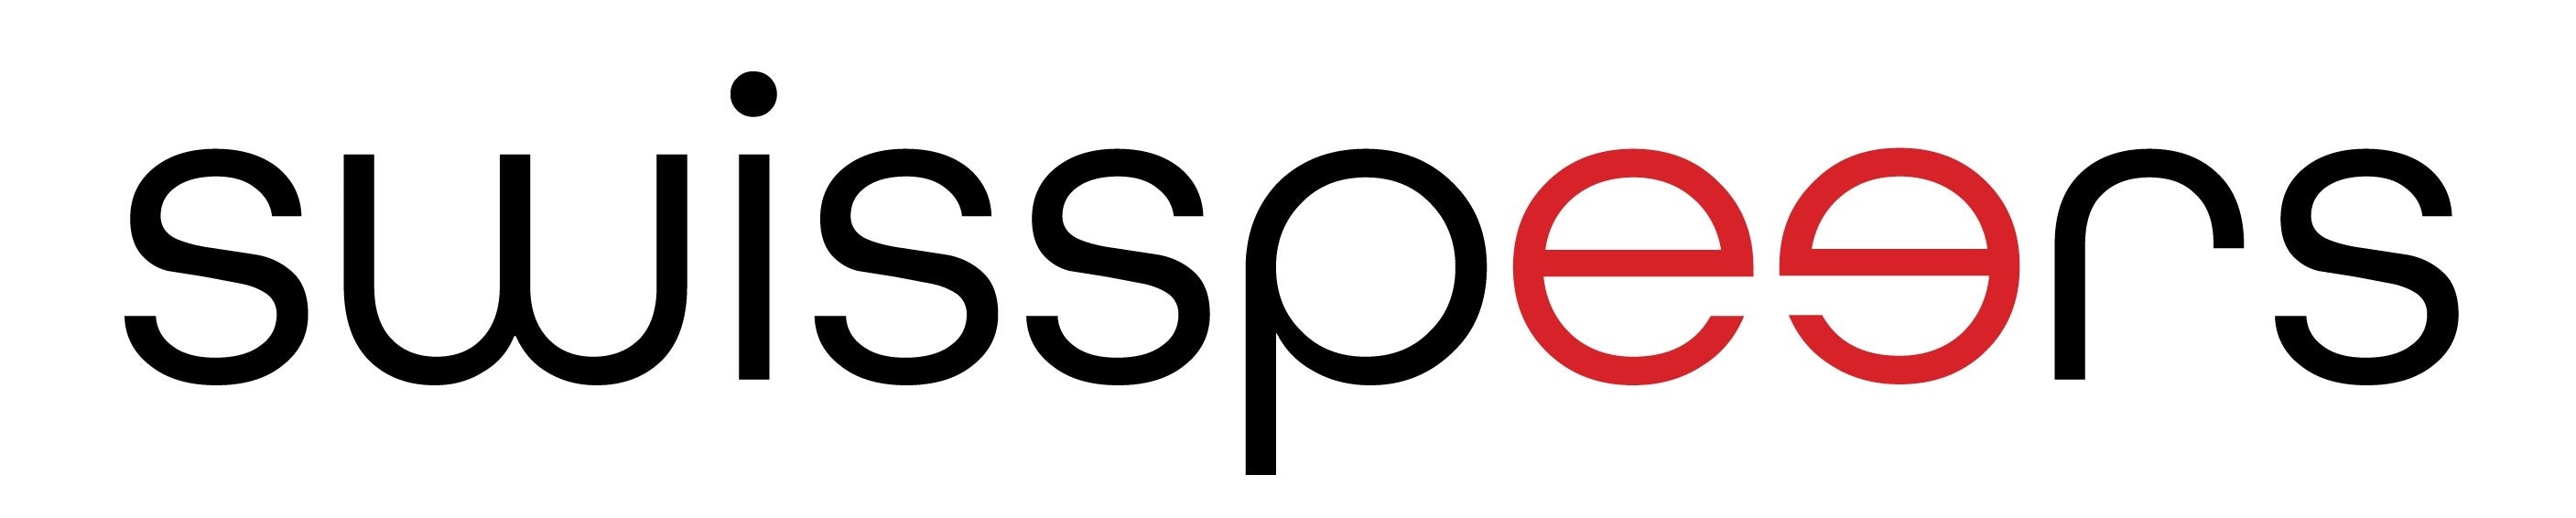 Das Logo ist eine Wortbildmarke und wird in den Farben Schwarz und Rot dargestellt.